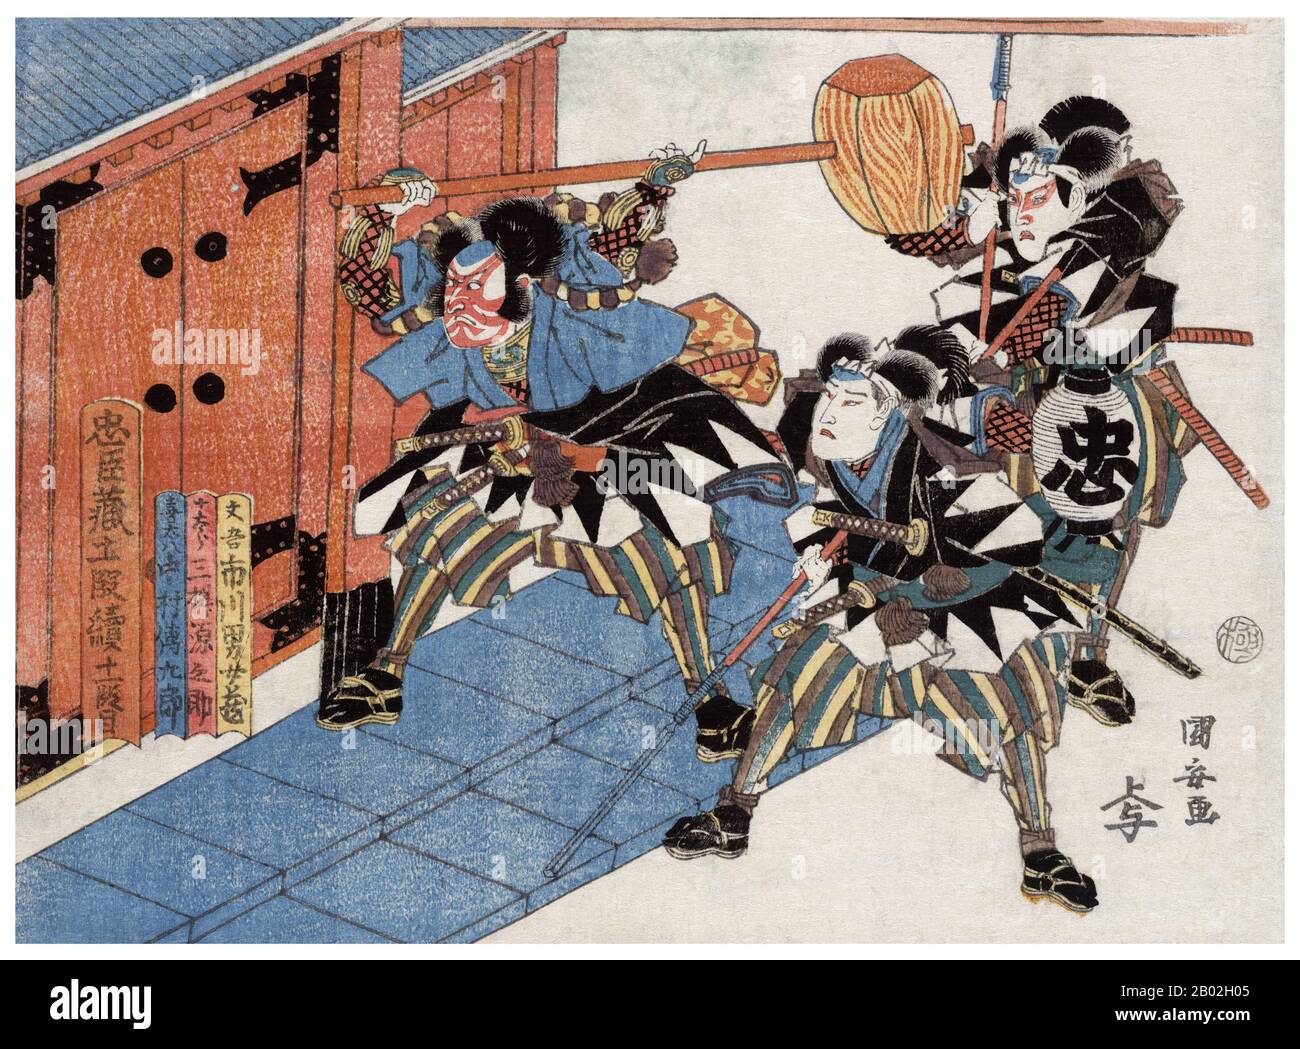 La vendetta dei Quarantasette Ronin (四十七士 Shi-jū-shichi-shi), noti anche come I Quarantasette Samurai, la Akō vendetta, o l'incidente di Genzoku Akō (元禄赤穂事件 Genzoku akō jiken) si è svolta in Giappone all'inizio del 18th secolo. Uno studioso giapponese ha descritto il racconto come la 'leggenda nazionale' del paese. Racconta il caso più famoso che coinvolge il codice samurai d'onore, bushidō. La storia racconta di un gruppo di samurai che sono stati lasciati leaderless (diventando ronina) dopo il loro daimyo (signore feudale) Asano Naganori è stato costretto a commettere sepuku (suicidio rituale) per aggredire un nam ufficiale corte Foto Stock